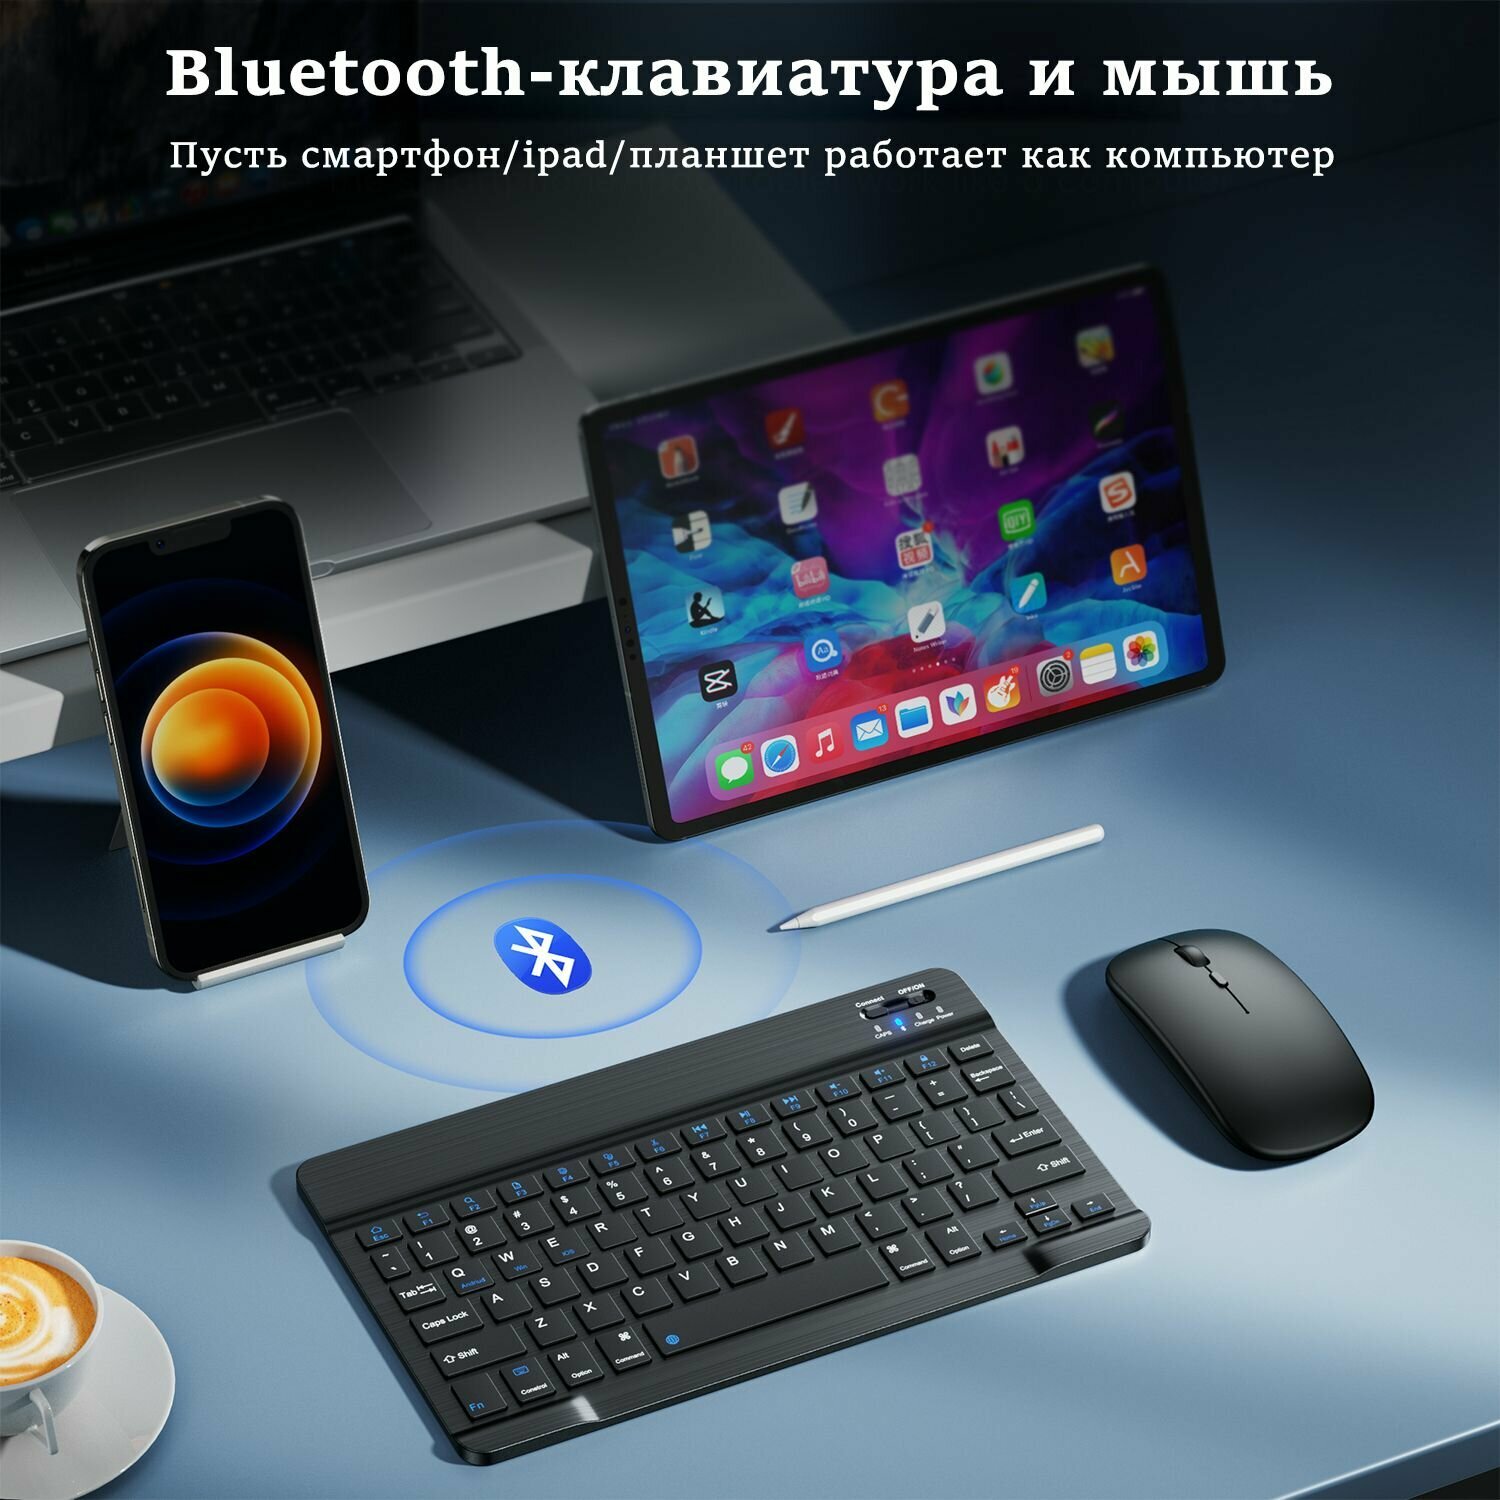 Беспроводная клавиатура и мышь Bluetooth-клавиатура для компьютера,bluetooth ipad, Телефона, Планшета,TV приставки